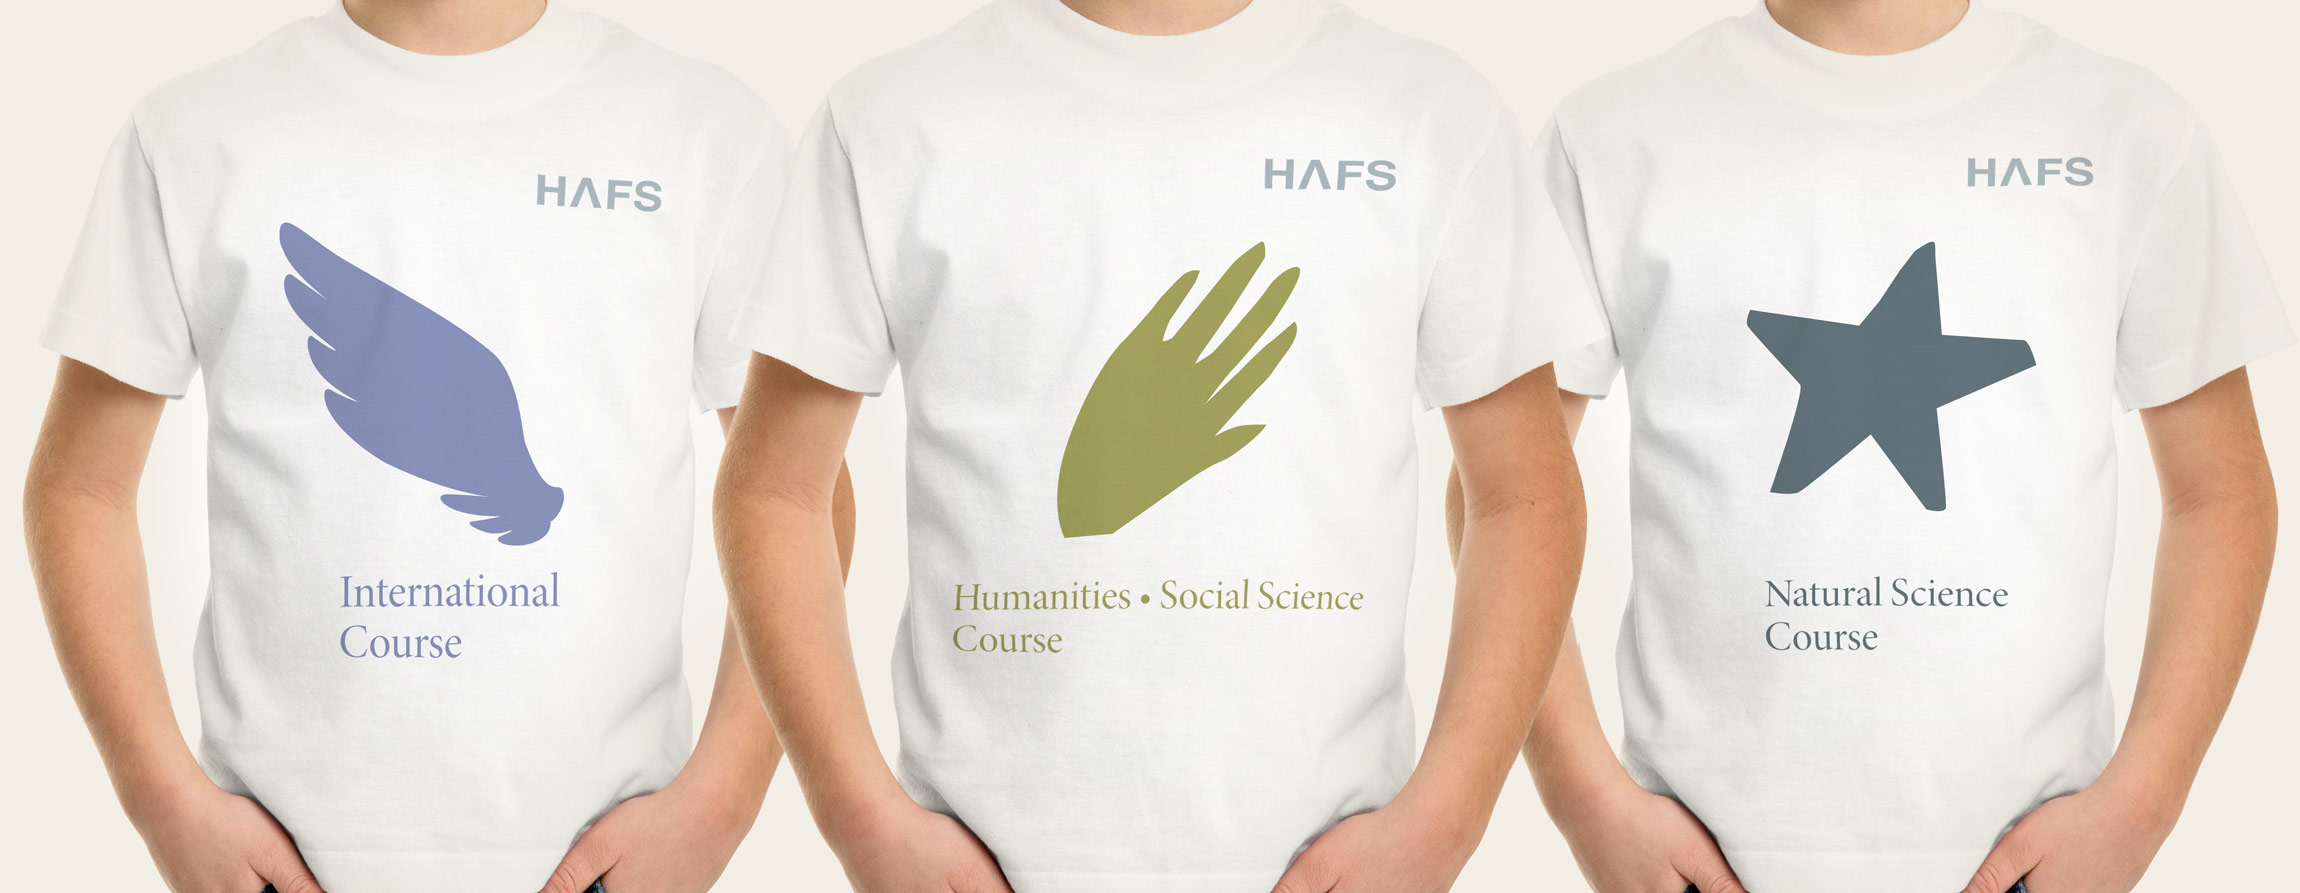 HAFS 용인외국어고등학교 브랜드 & 아이덴터티 hafs-symbol-3.jpg